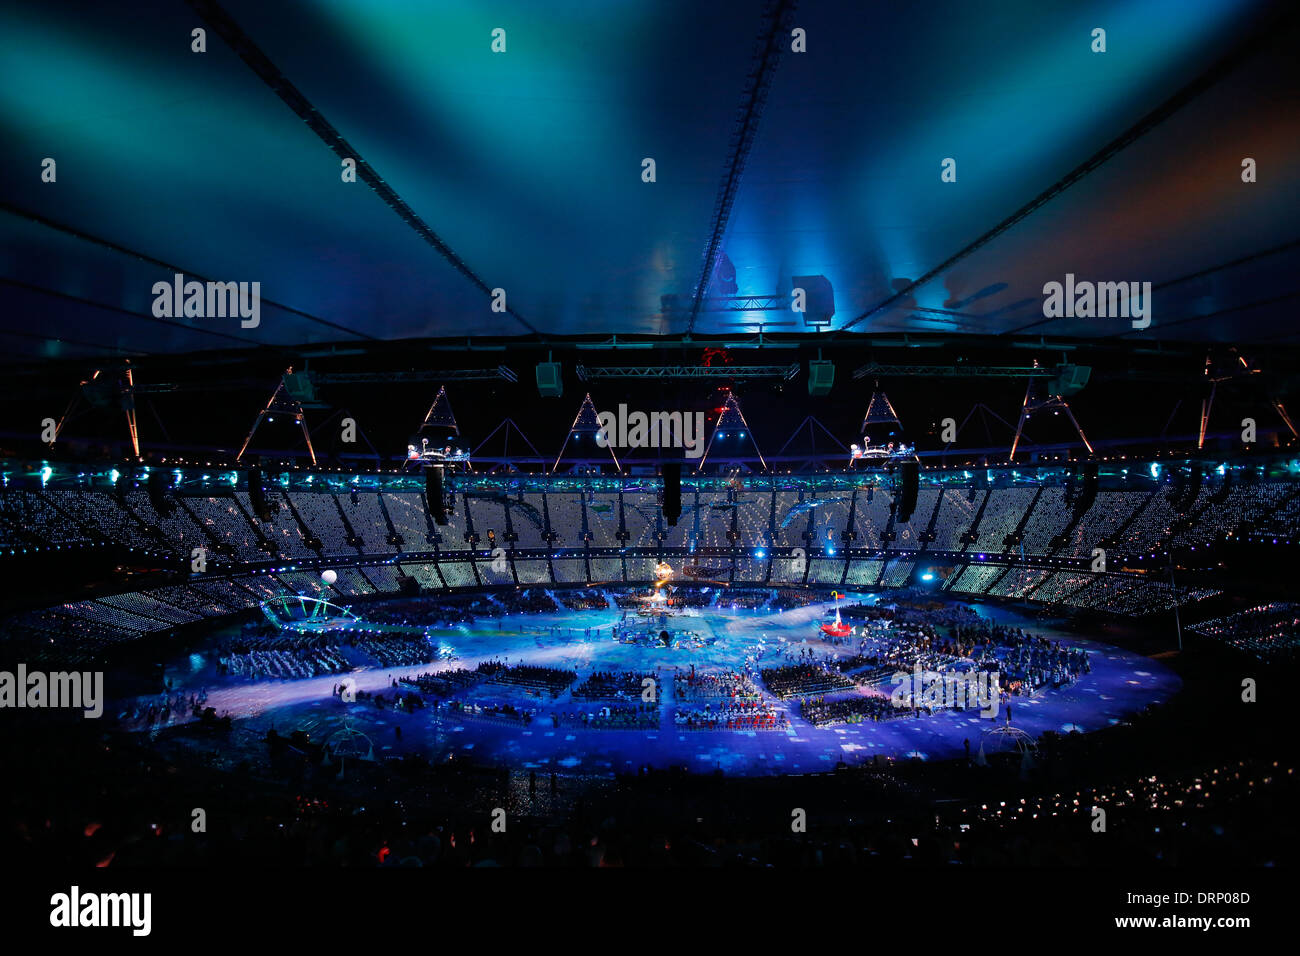 Les artistes interprètes ou exécutants dans le stade olympique lors de la cérémonie d'ouverture des Jeux Paralympiques de 2012 à Londres Banque D'Images